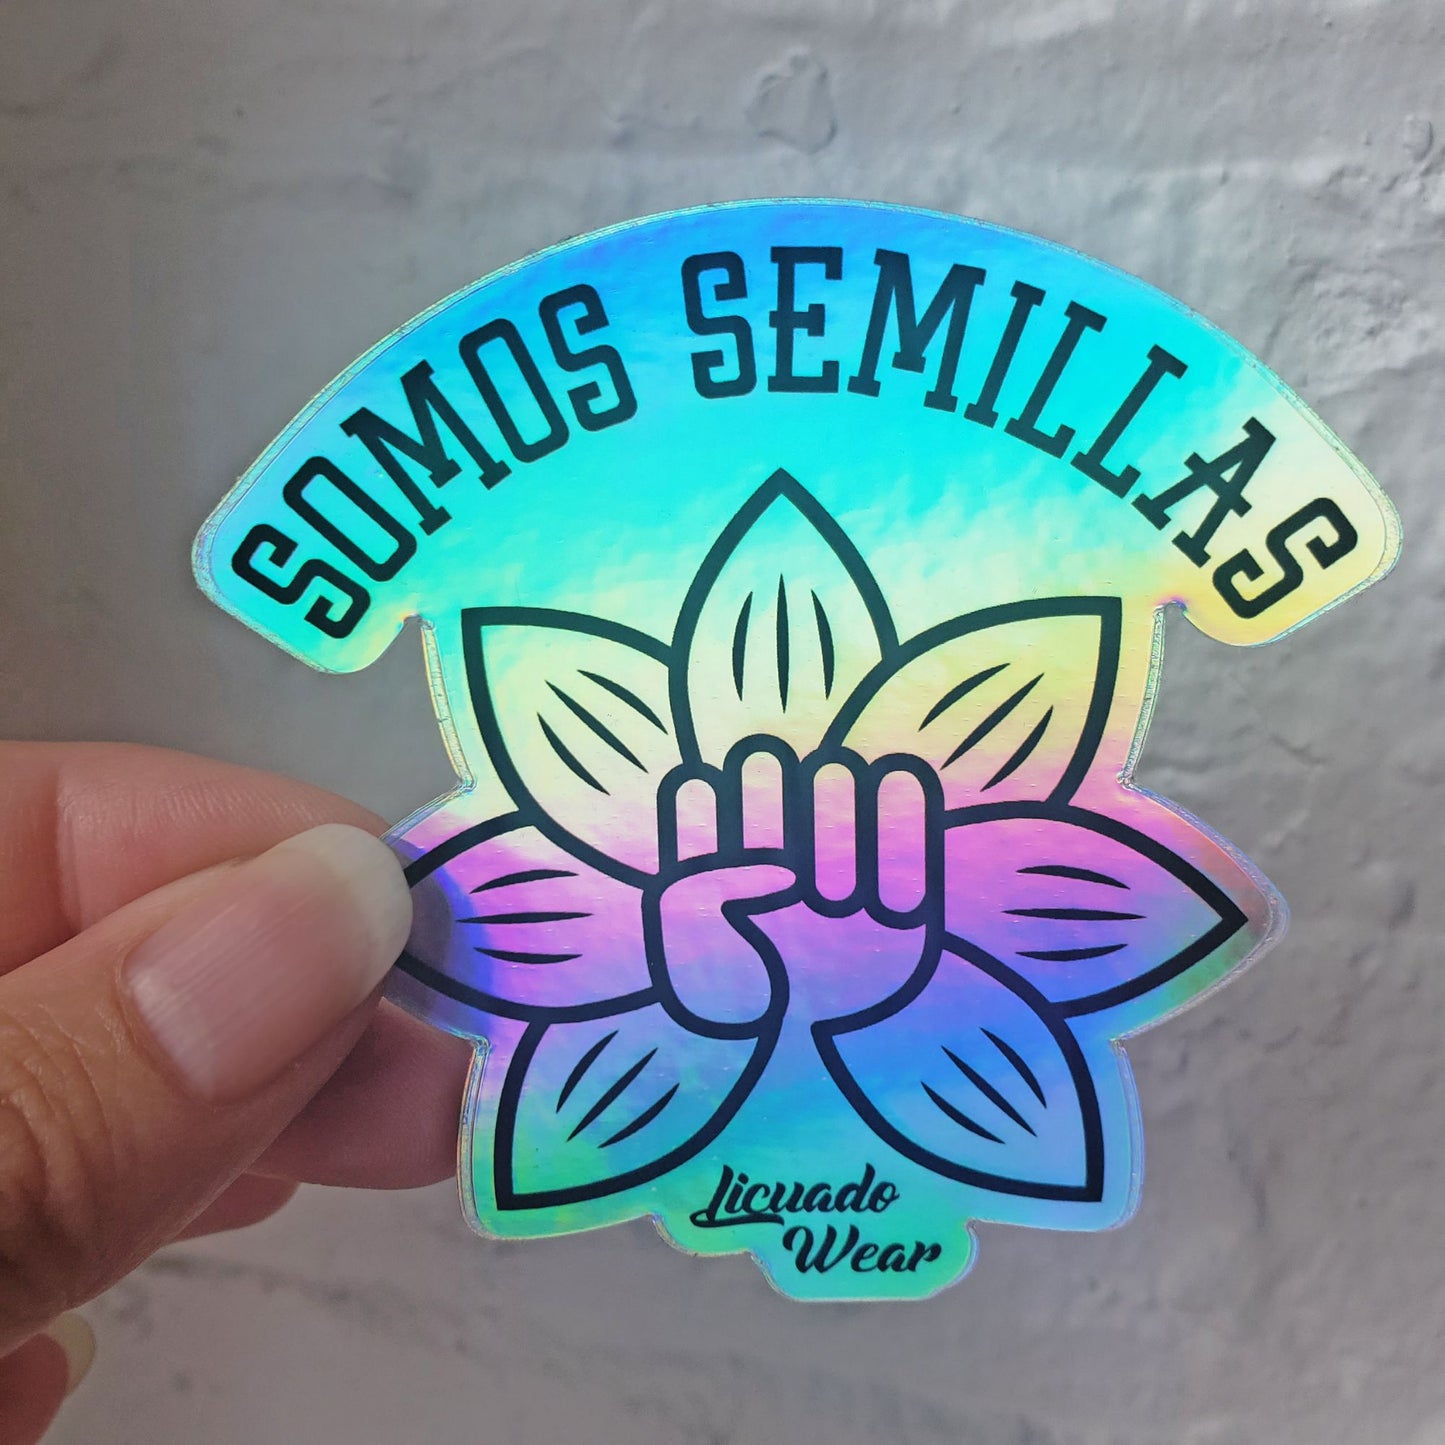 SOMOS SEMILLAS - Holographic Sticker